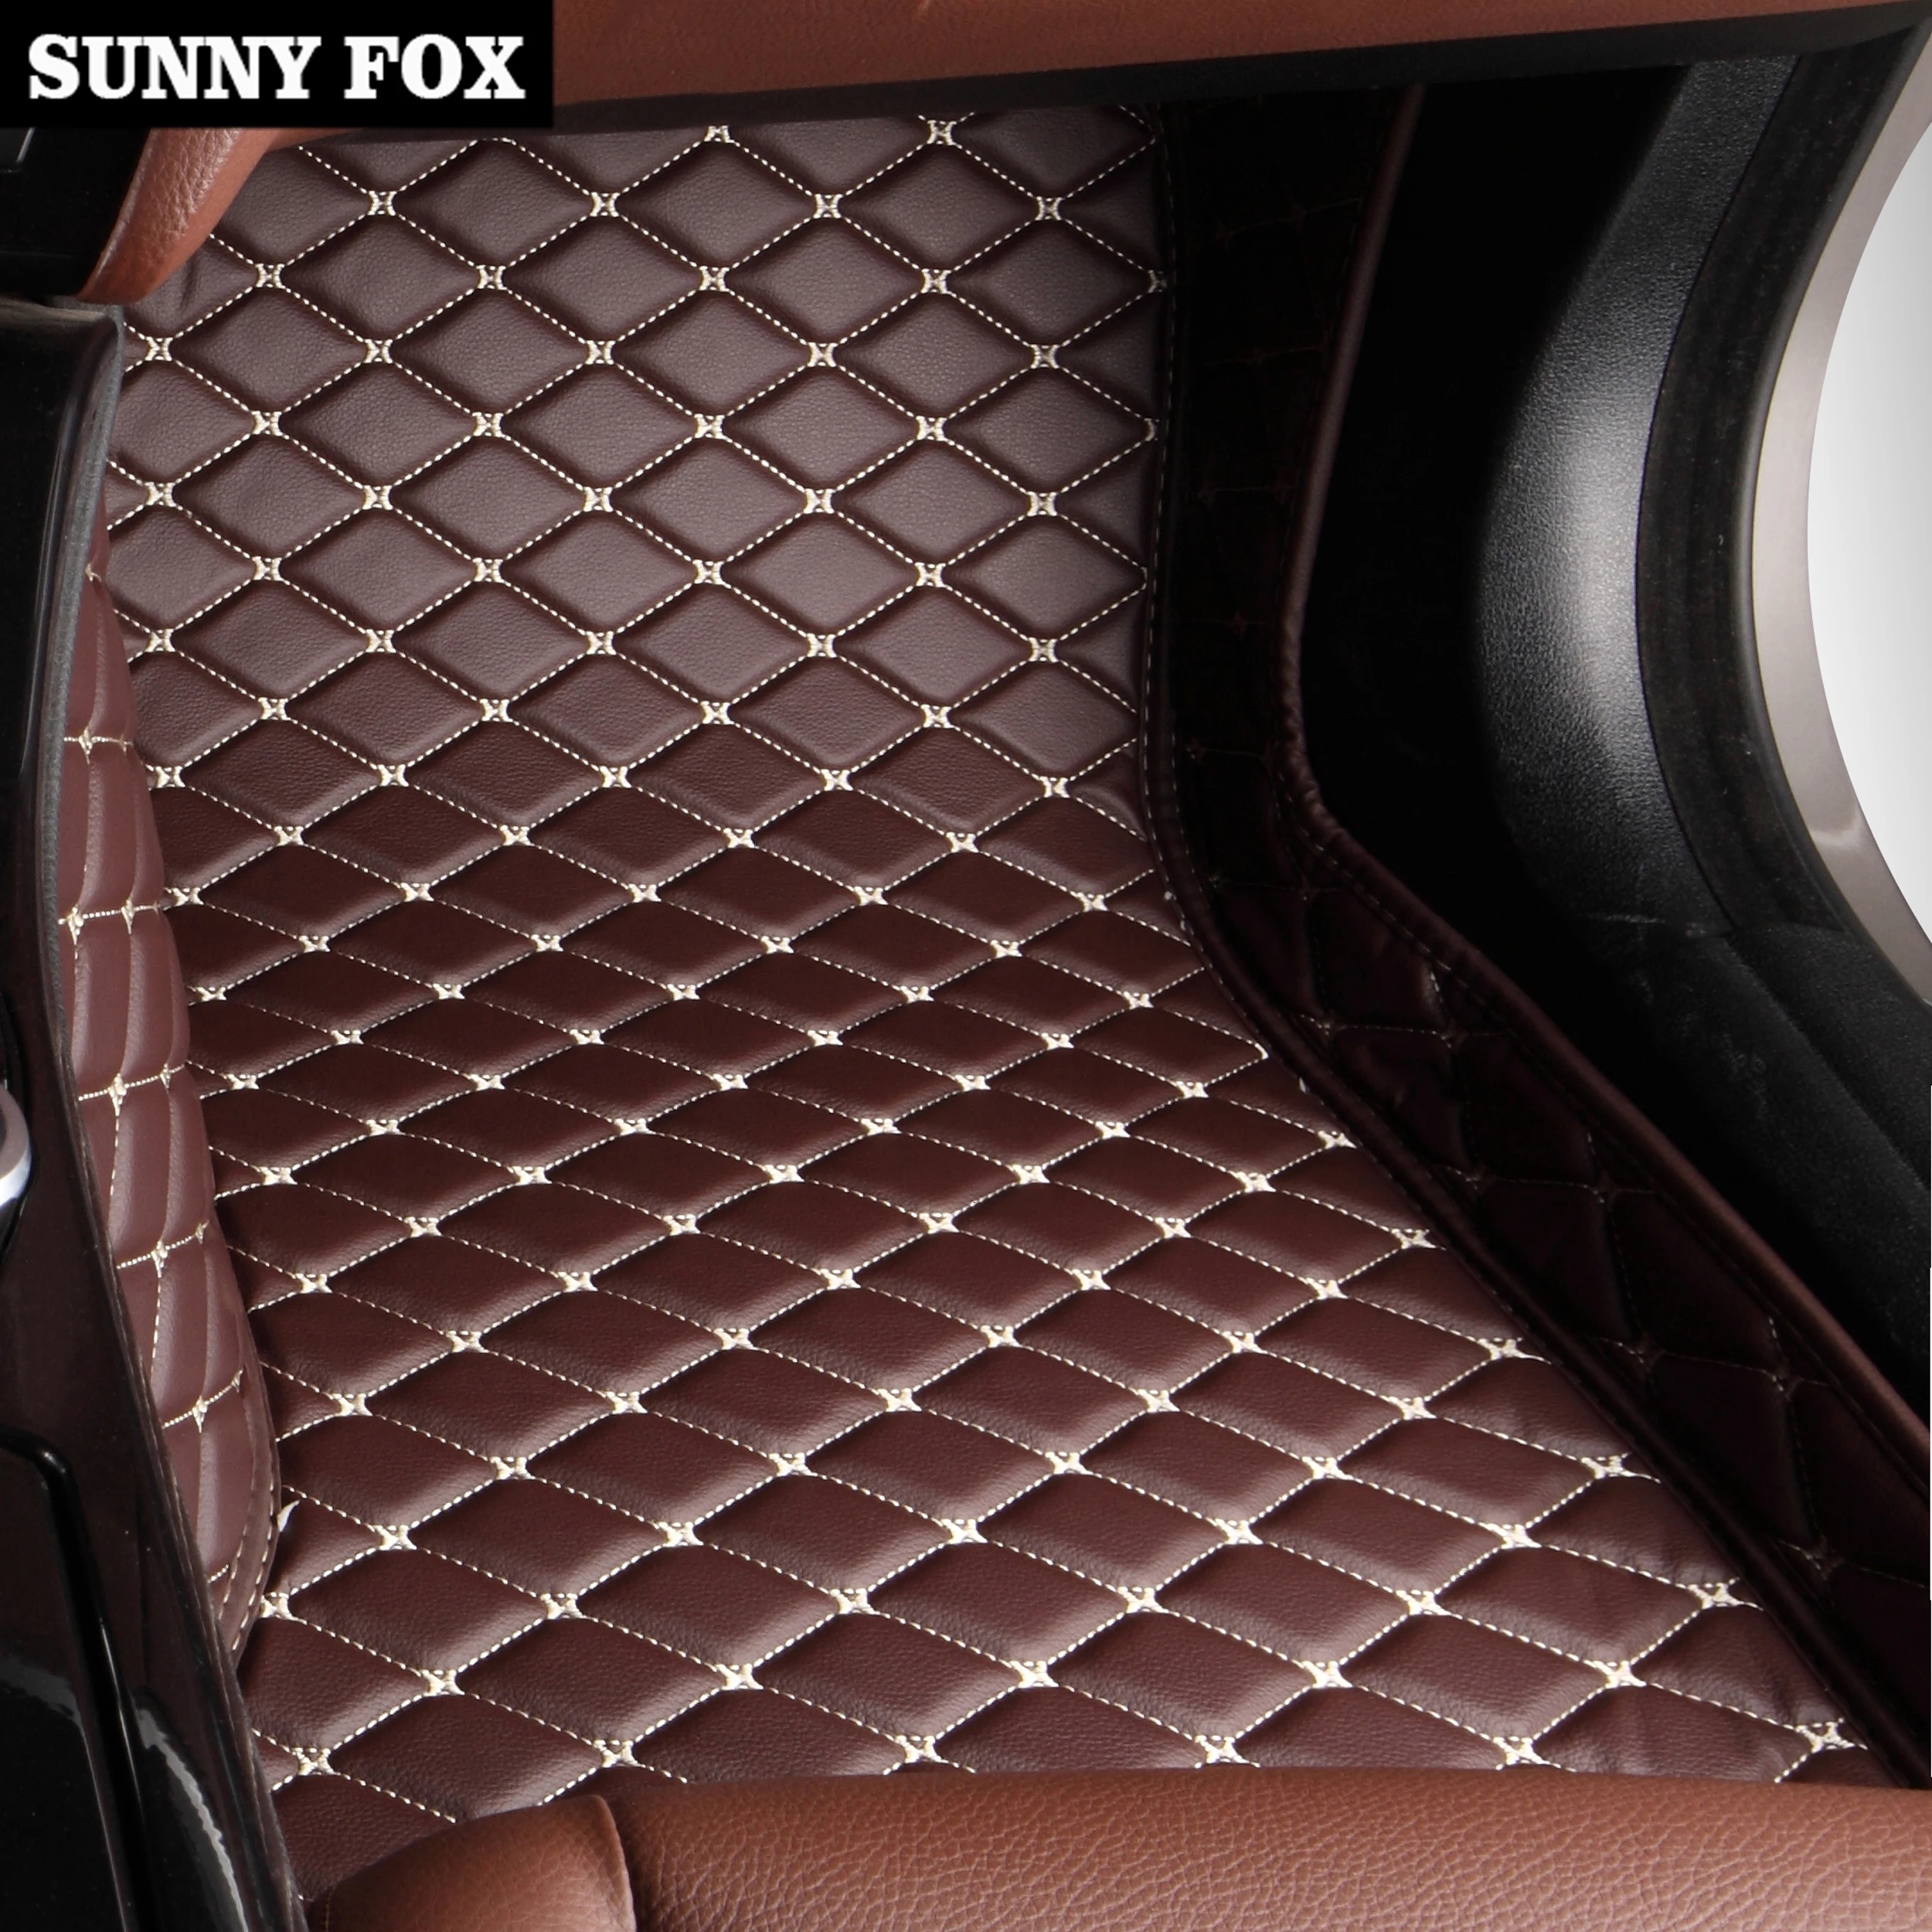 Sunny Fox автомобильные коврики для Skoda Octavia Superb Fabia Rapid spaceback водонепроницаемые автомобильные-стильные противоскользящие ковровые вкладыши